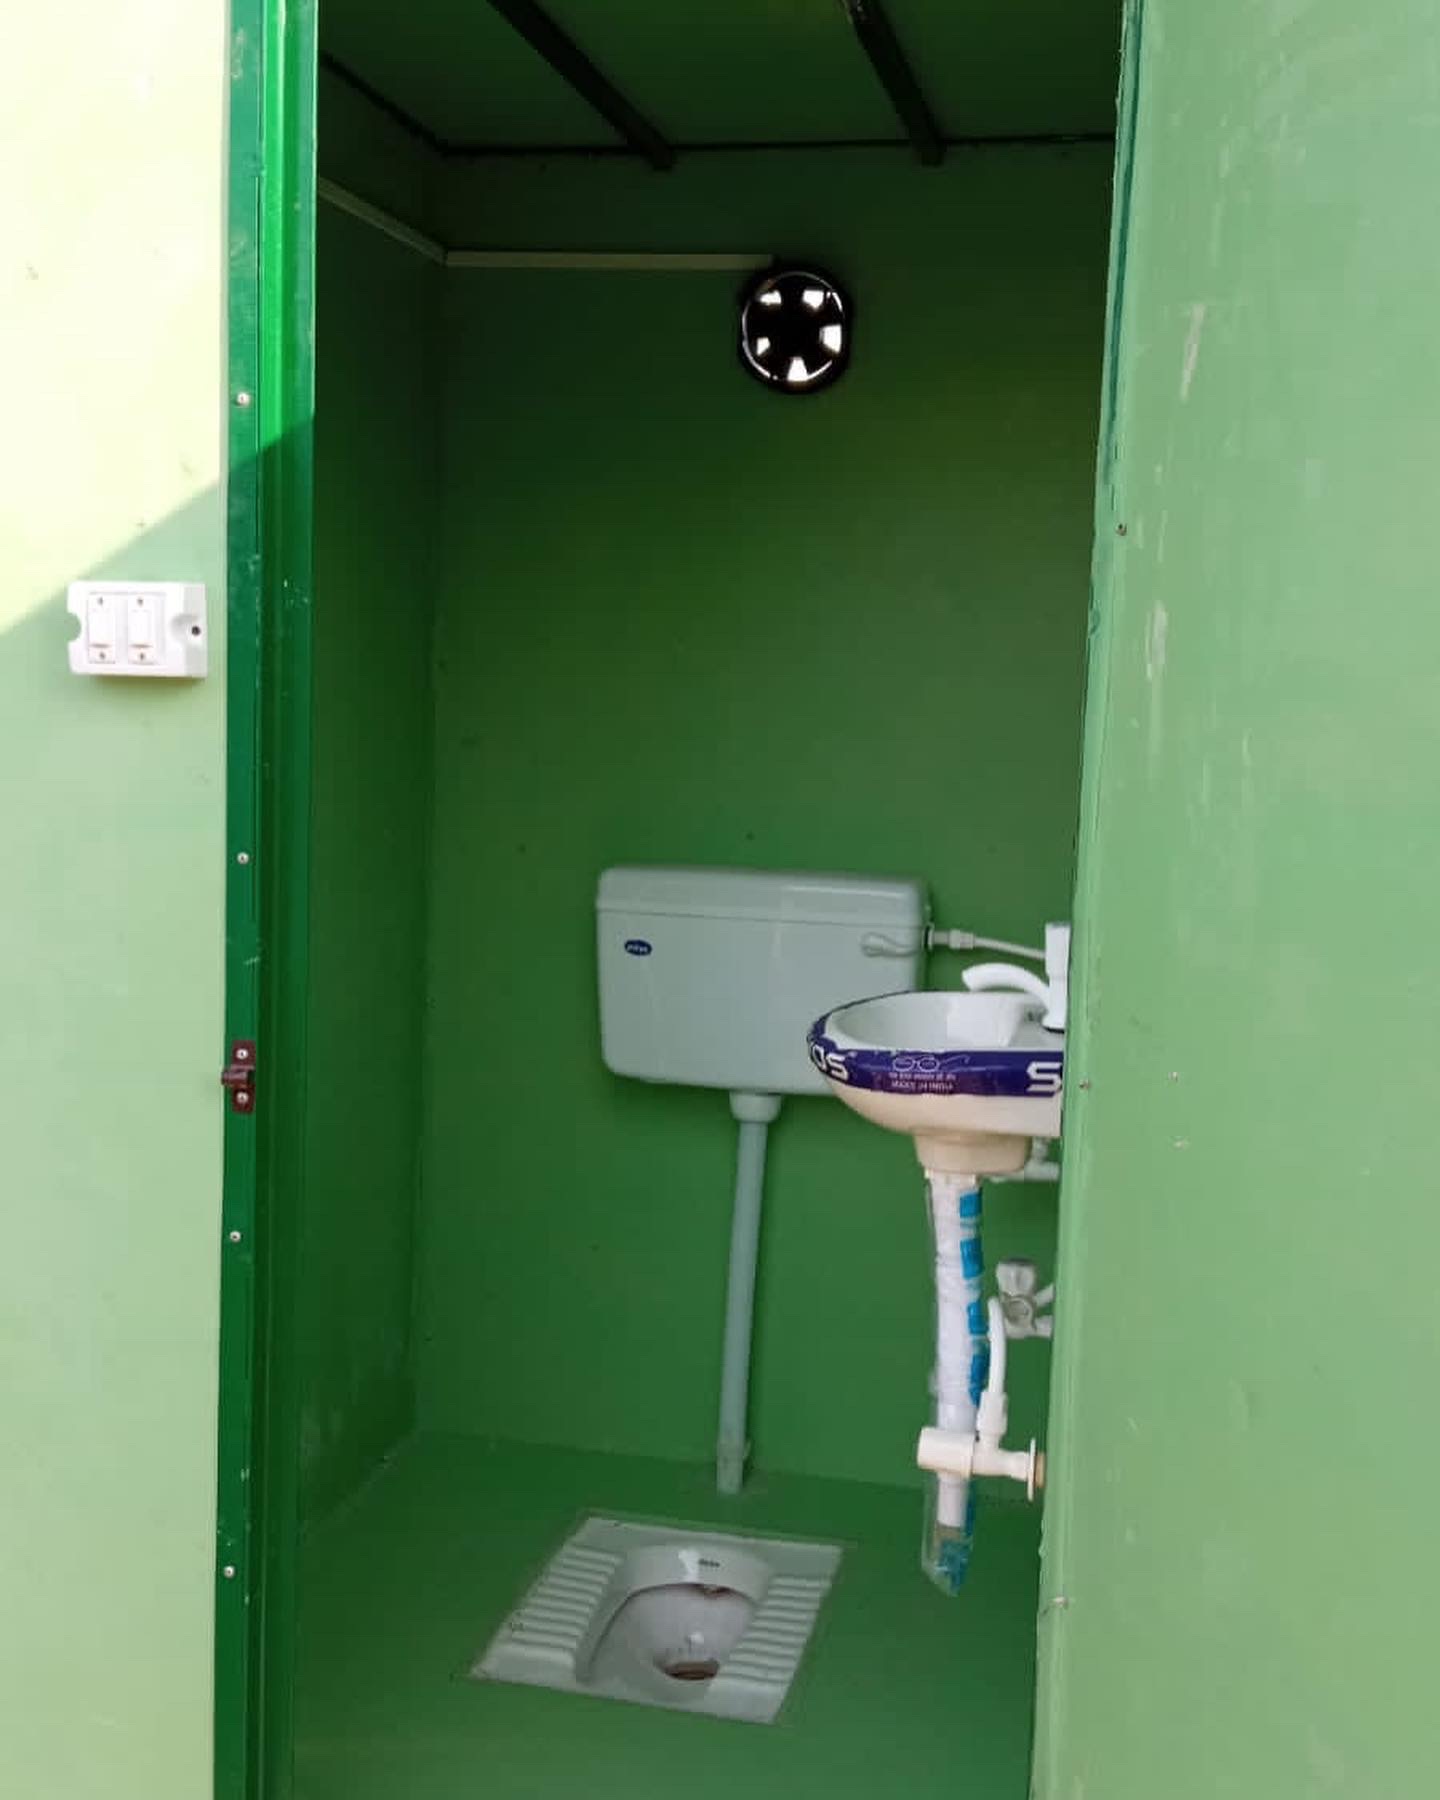 frp-portable-toilet